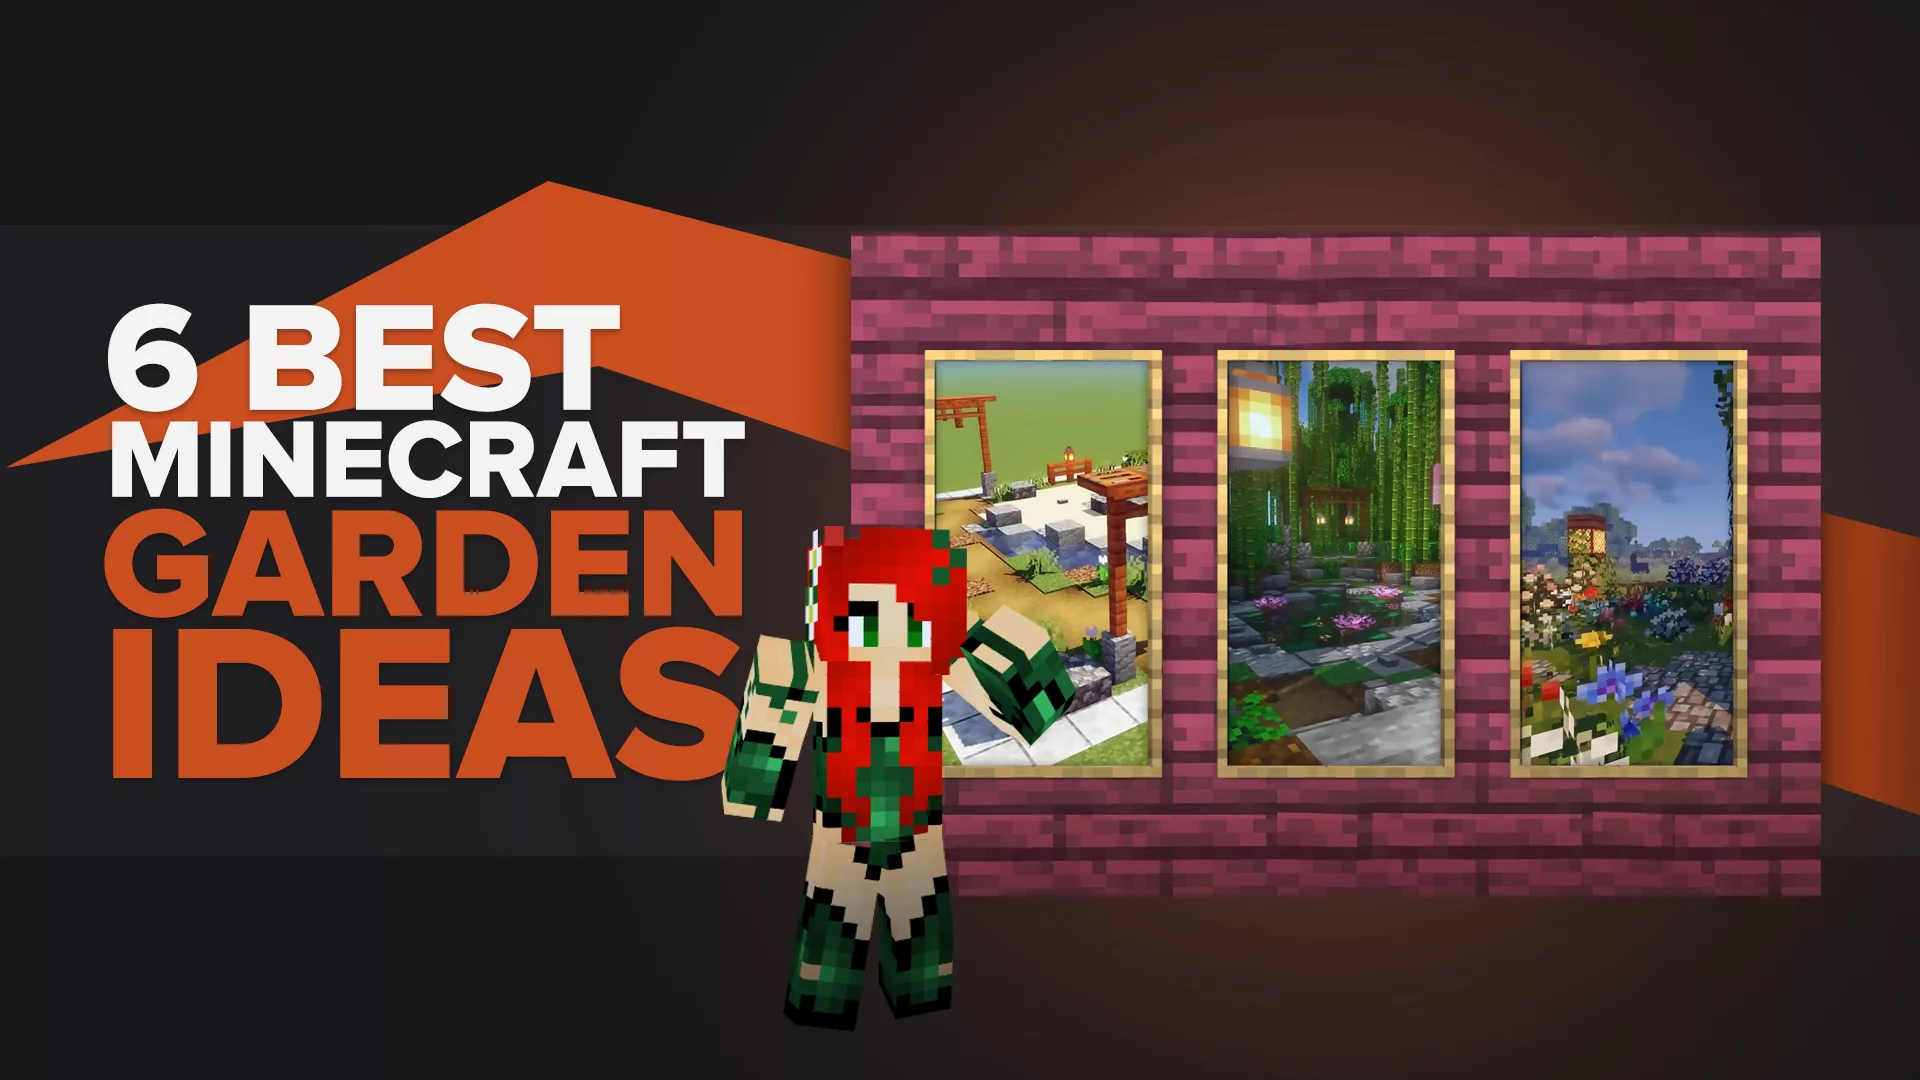 6 Best Minecraft Garden Ideas